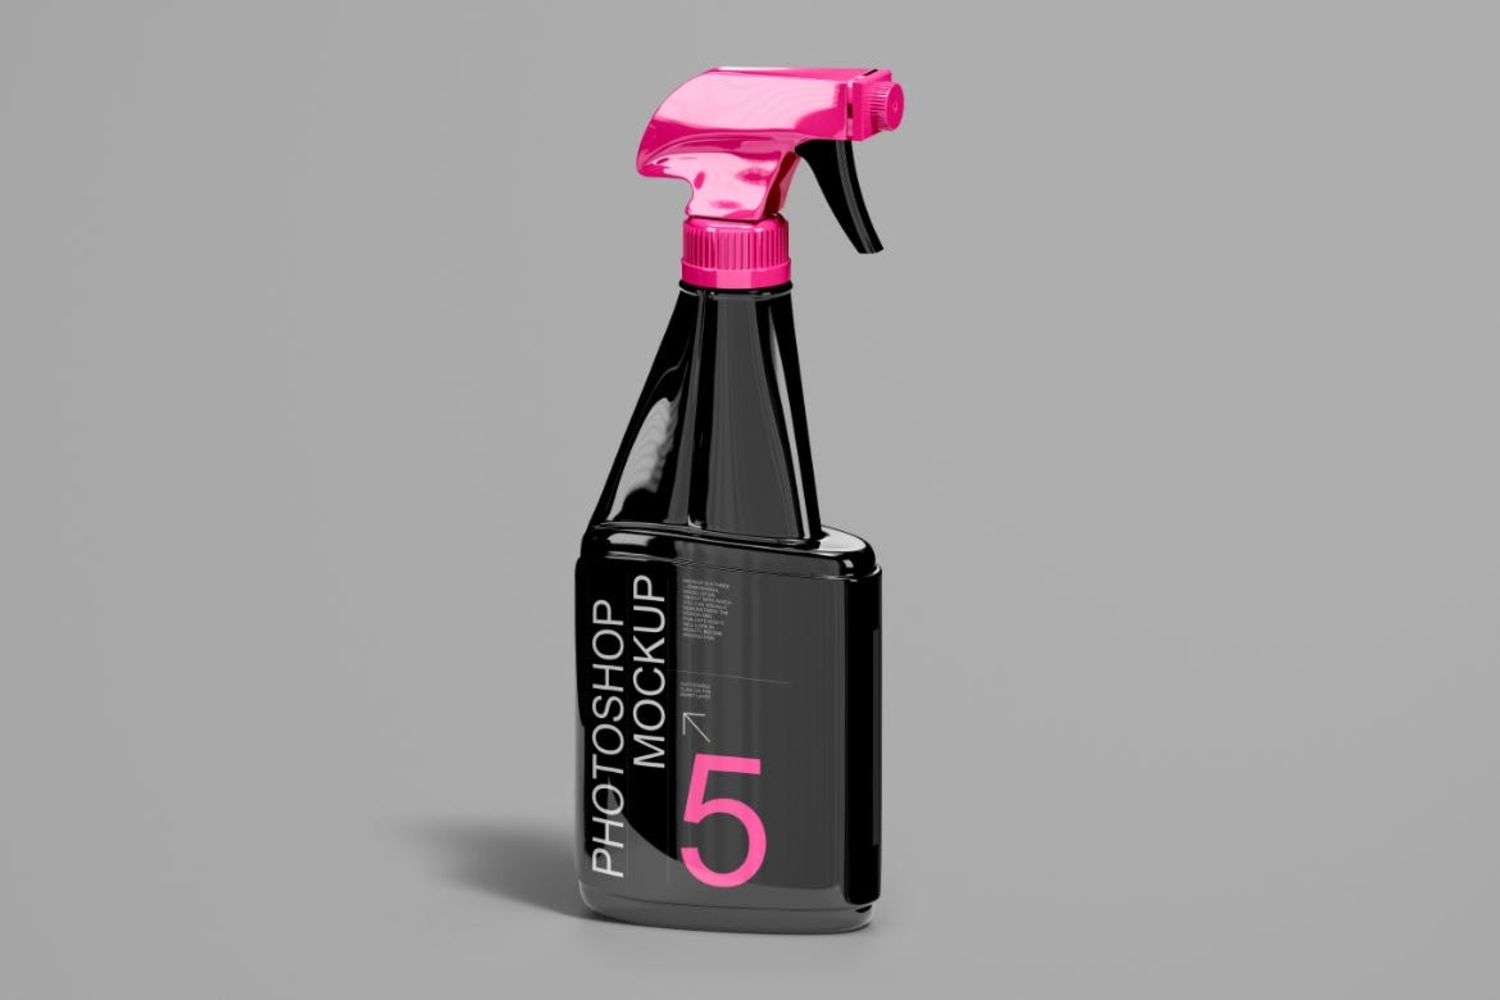 3835 3款去污清洁剂分装喷雾瓶产品包装设计贴图ps样机素材展示效果图 Spray Bottle Mockup SetGOOODME.COM